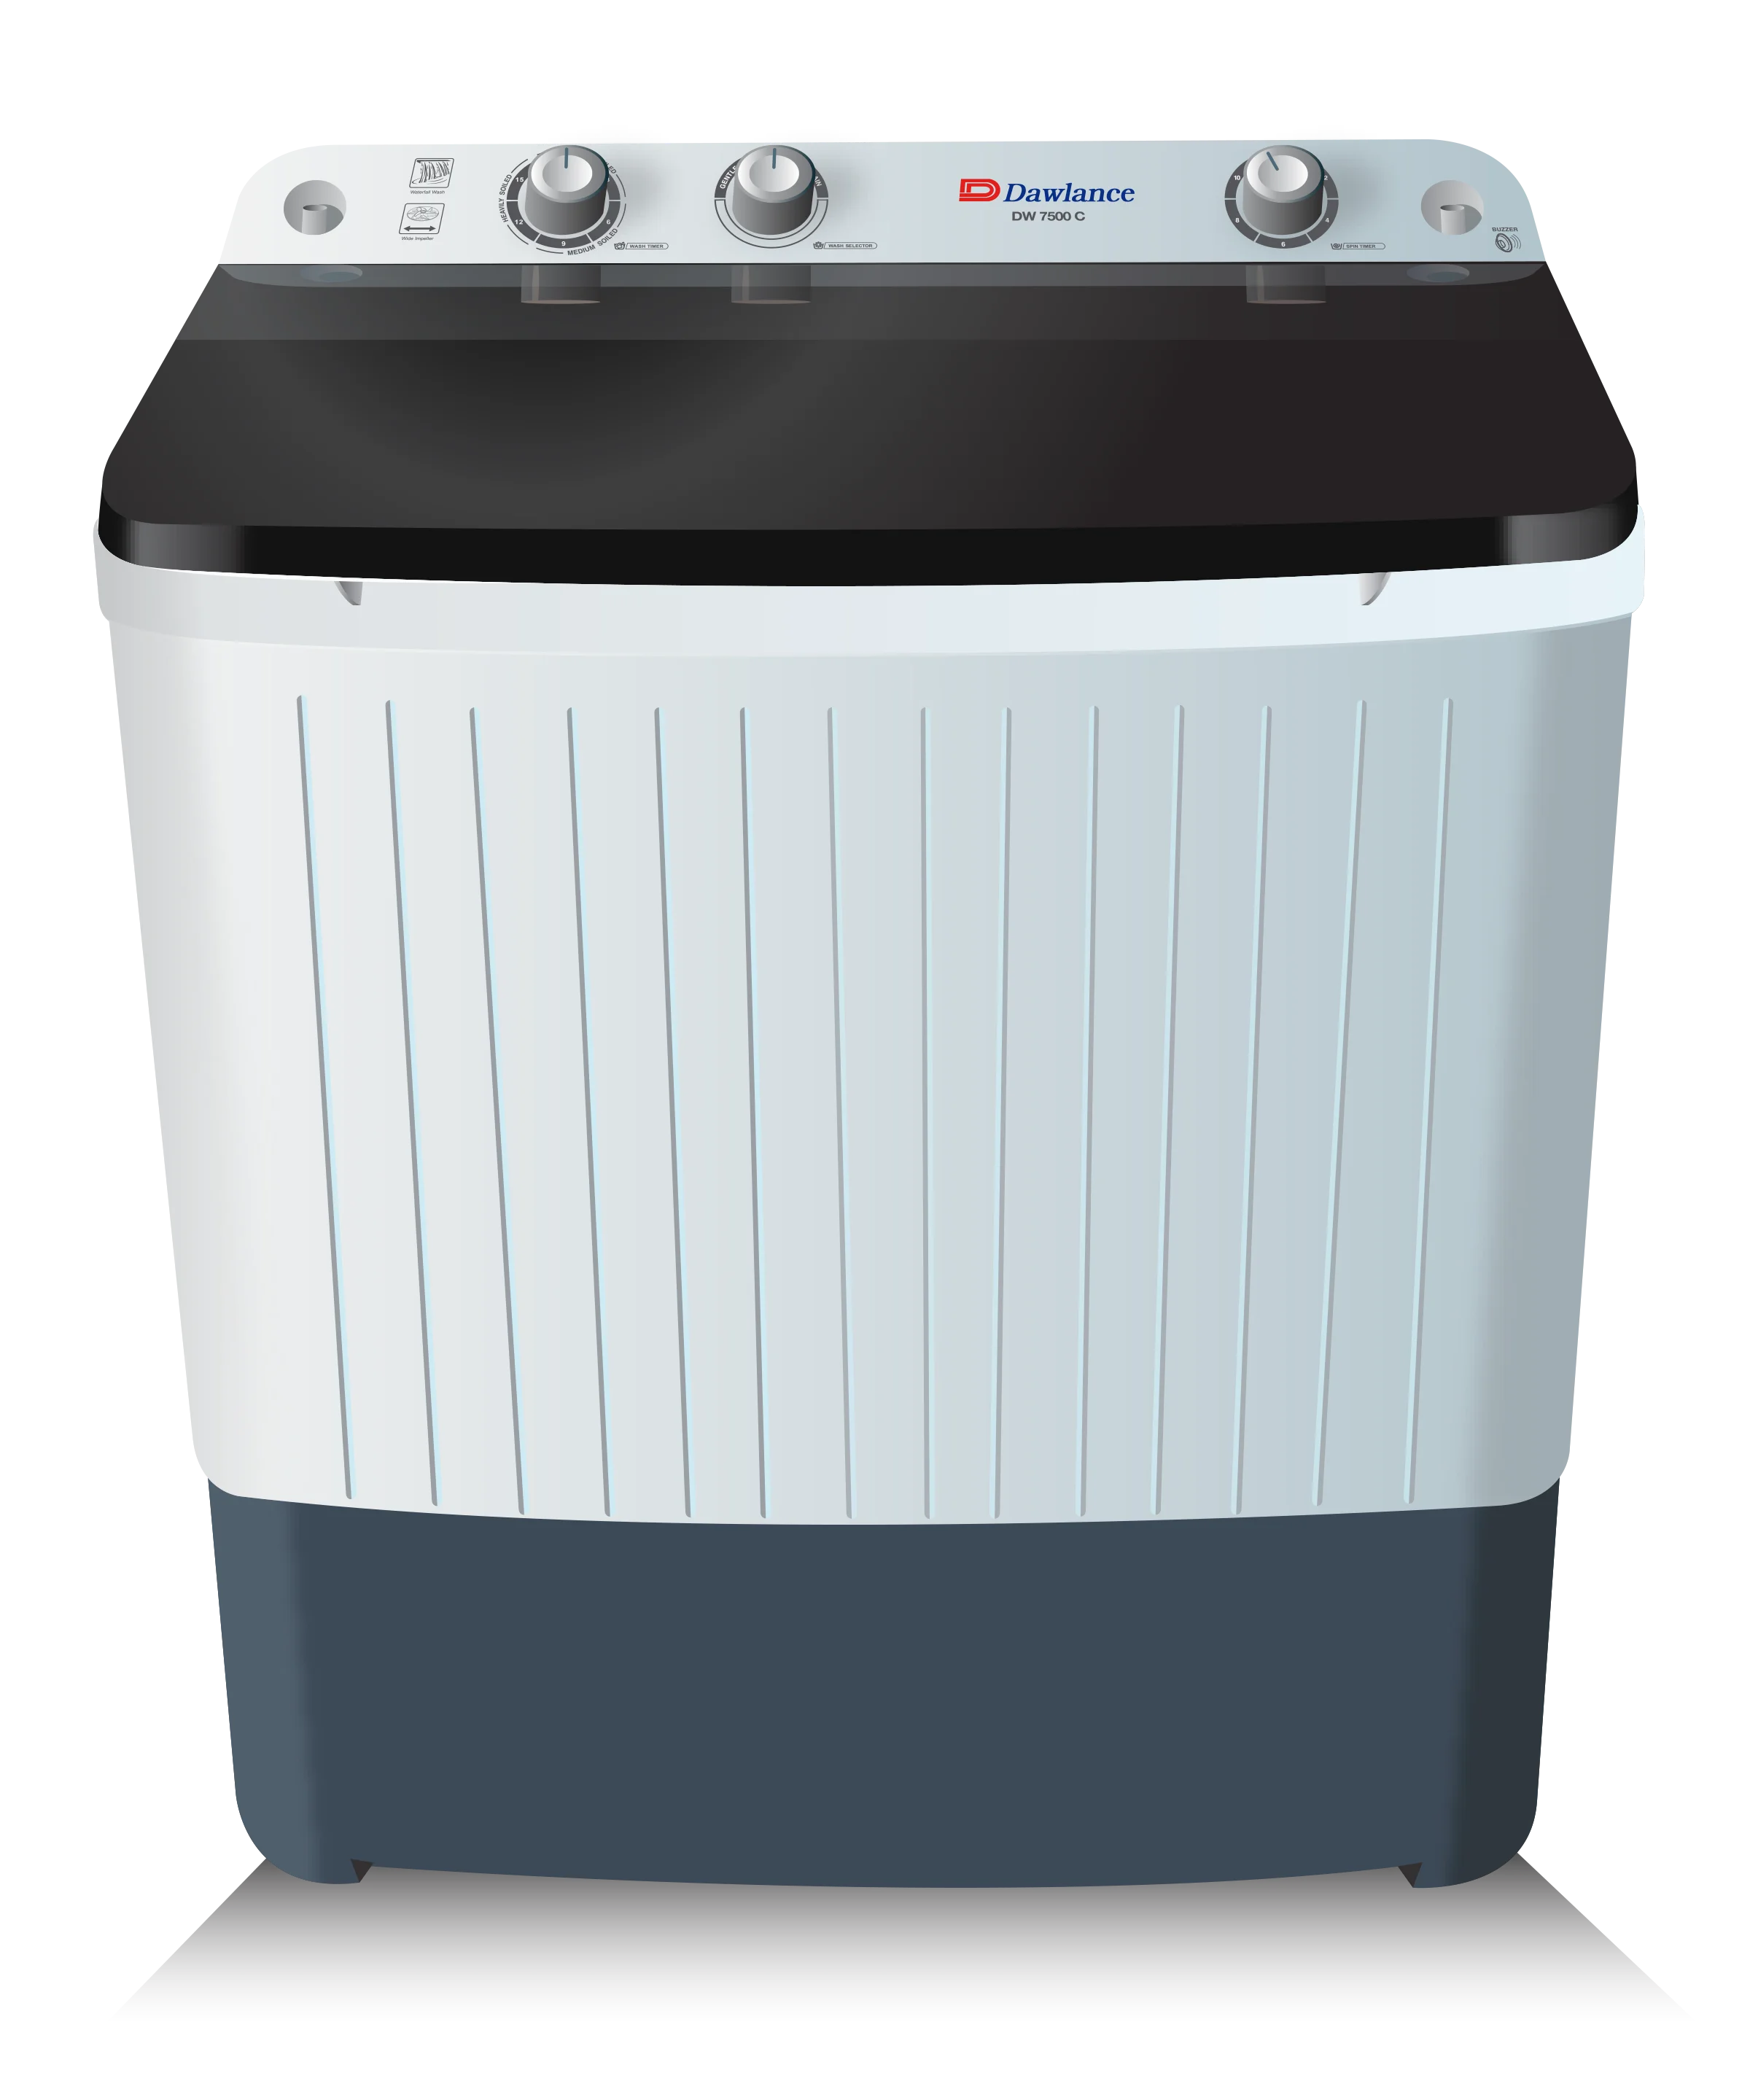 Dawlance Washing Machine DW7500 Twin Tub Clear LID